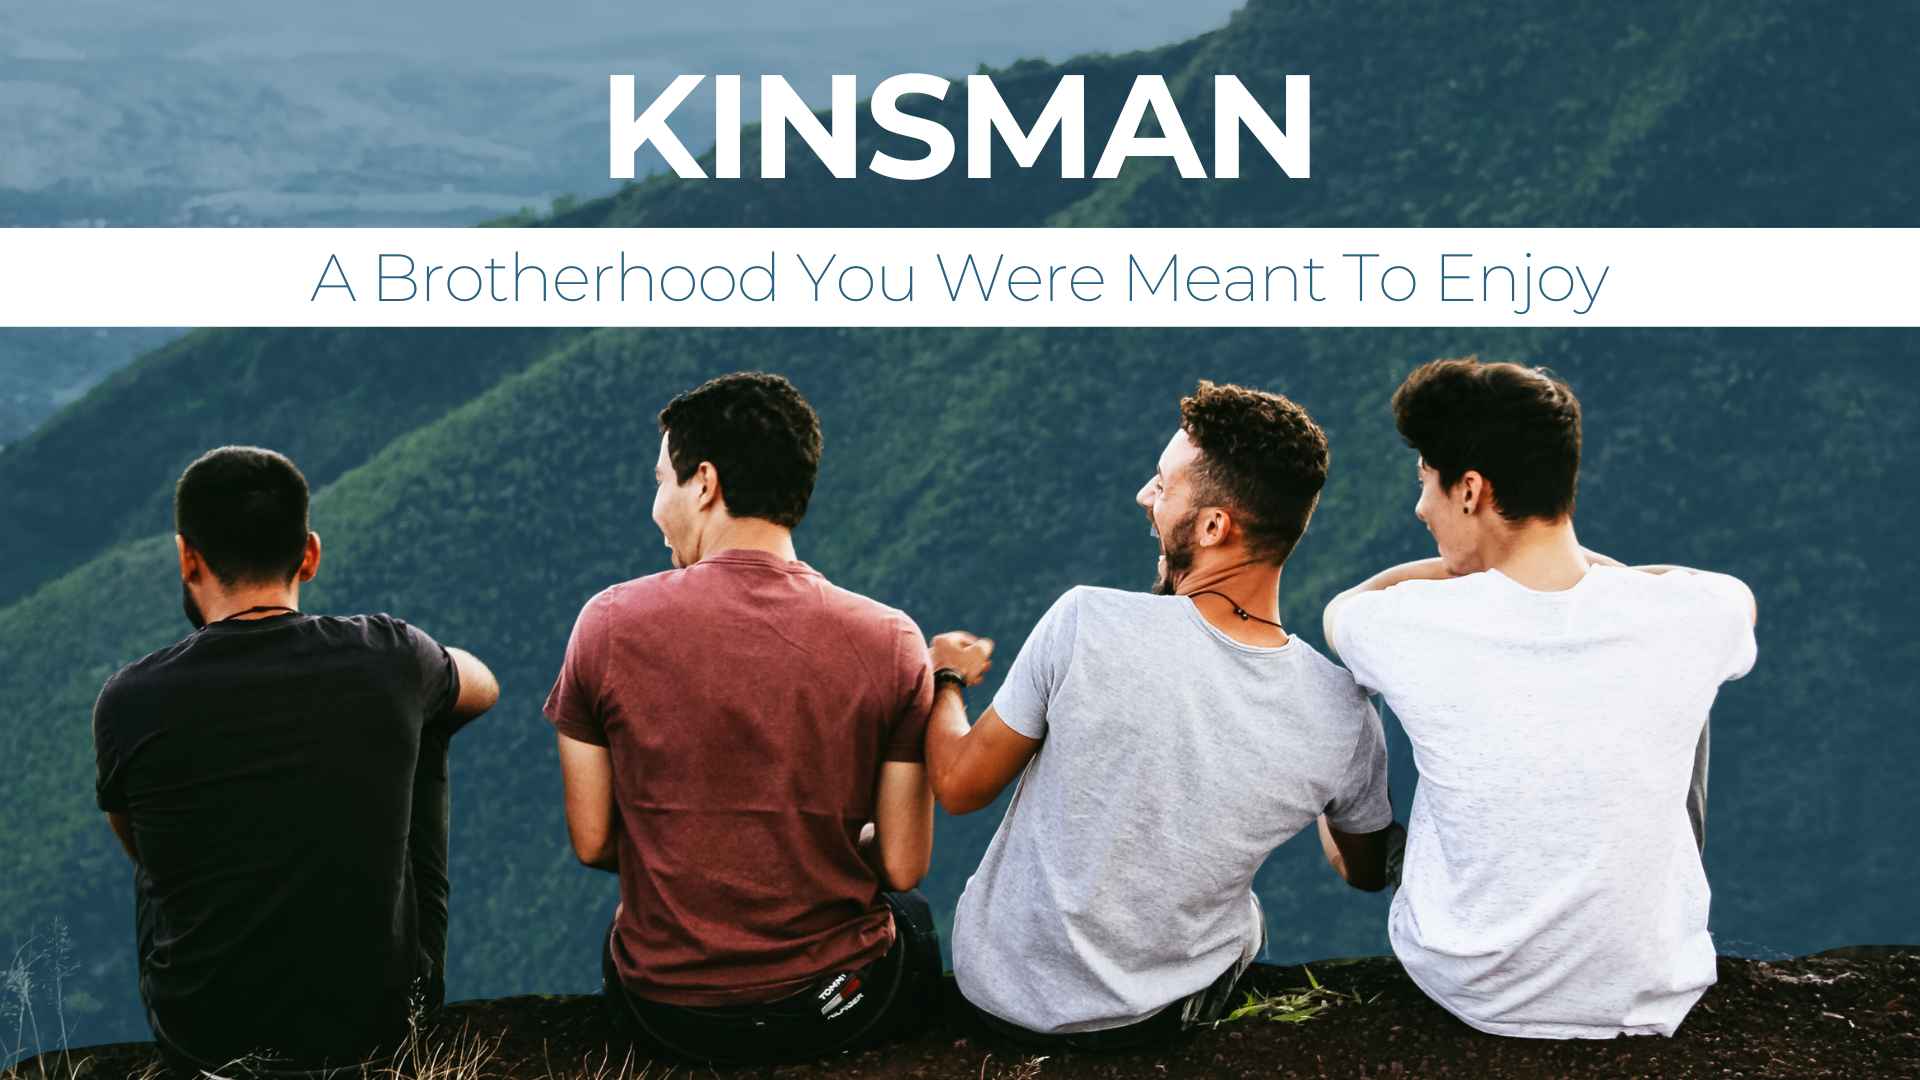 Kinsman: A Brotherhood You Were Meant To Enjoy